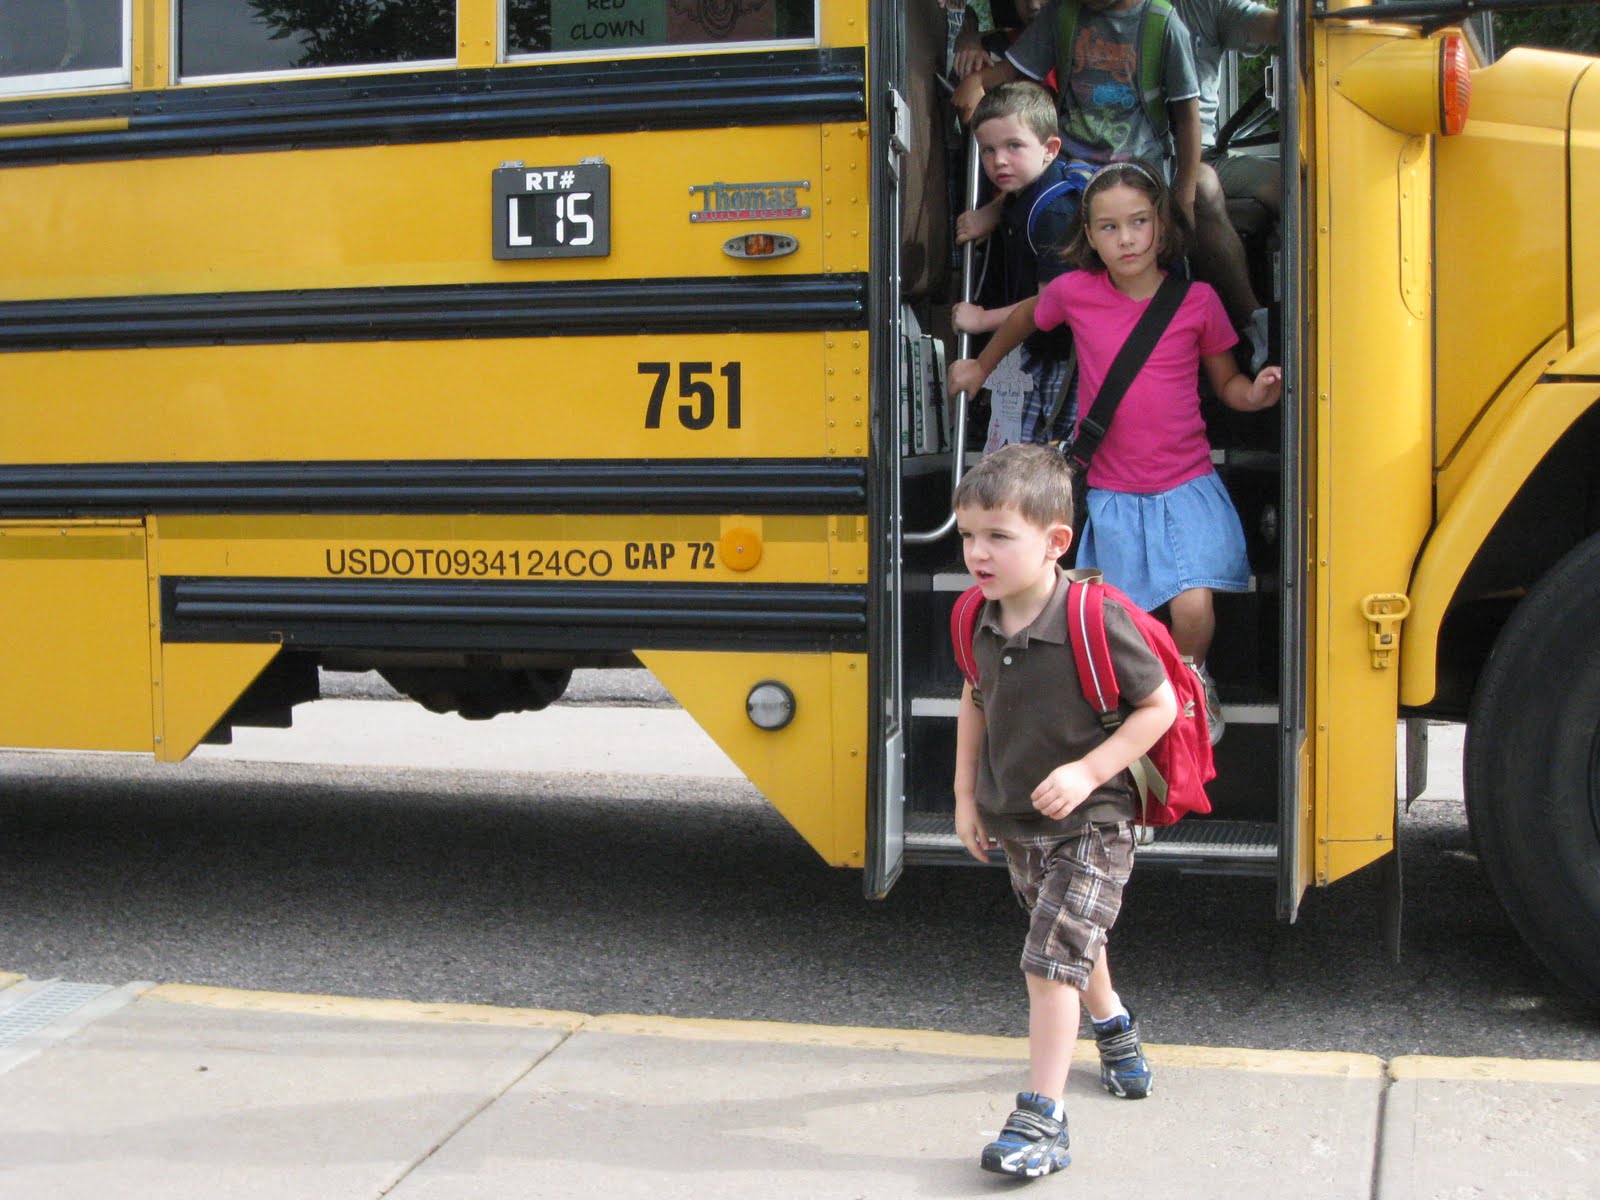 Выходить сходить. Выходить из автобуса. Лети выходят из автобуса. Дети виходят из автобус. Девушка выходит из автобуса.